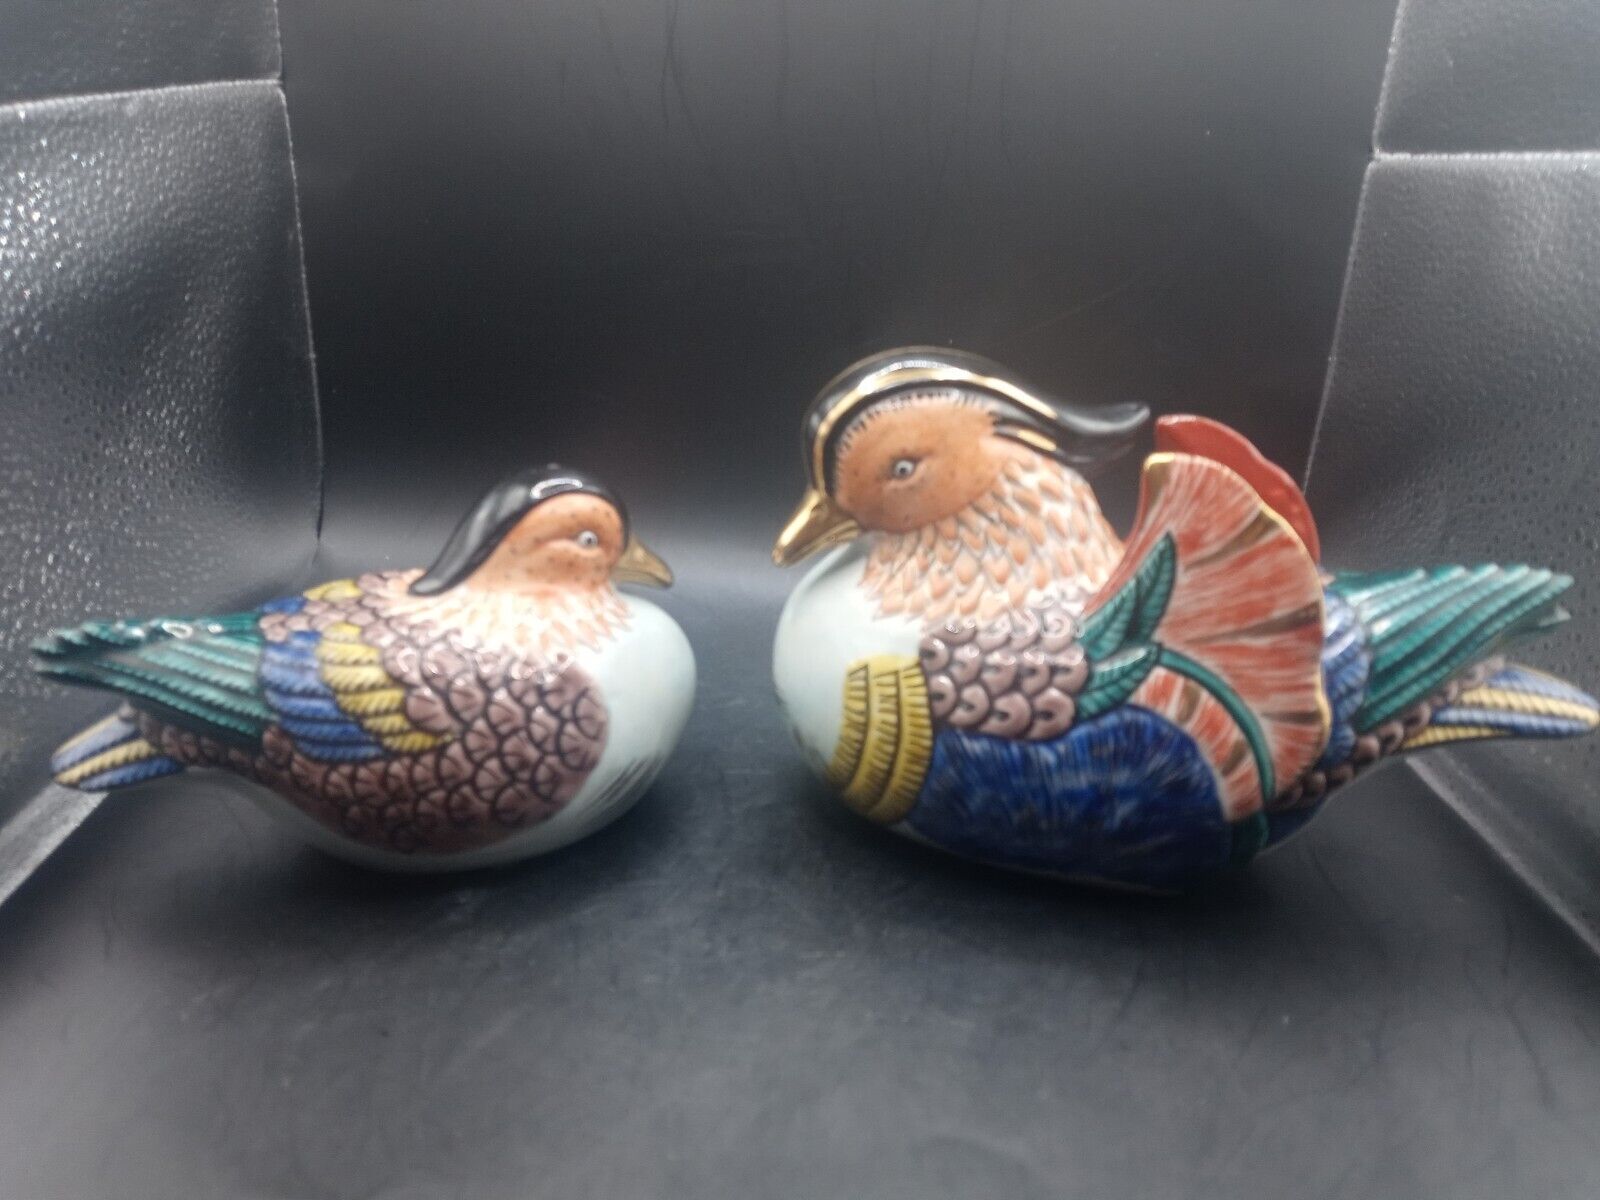  Rare Vintage Kutani Porcelain Japanese Hand Painted Mandarin duck Figurines